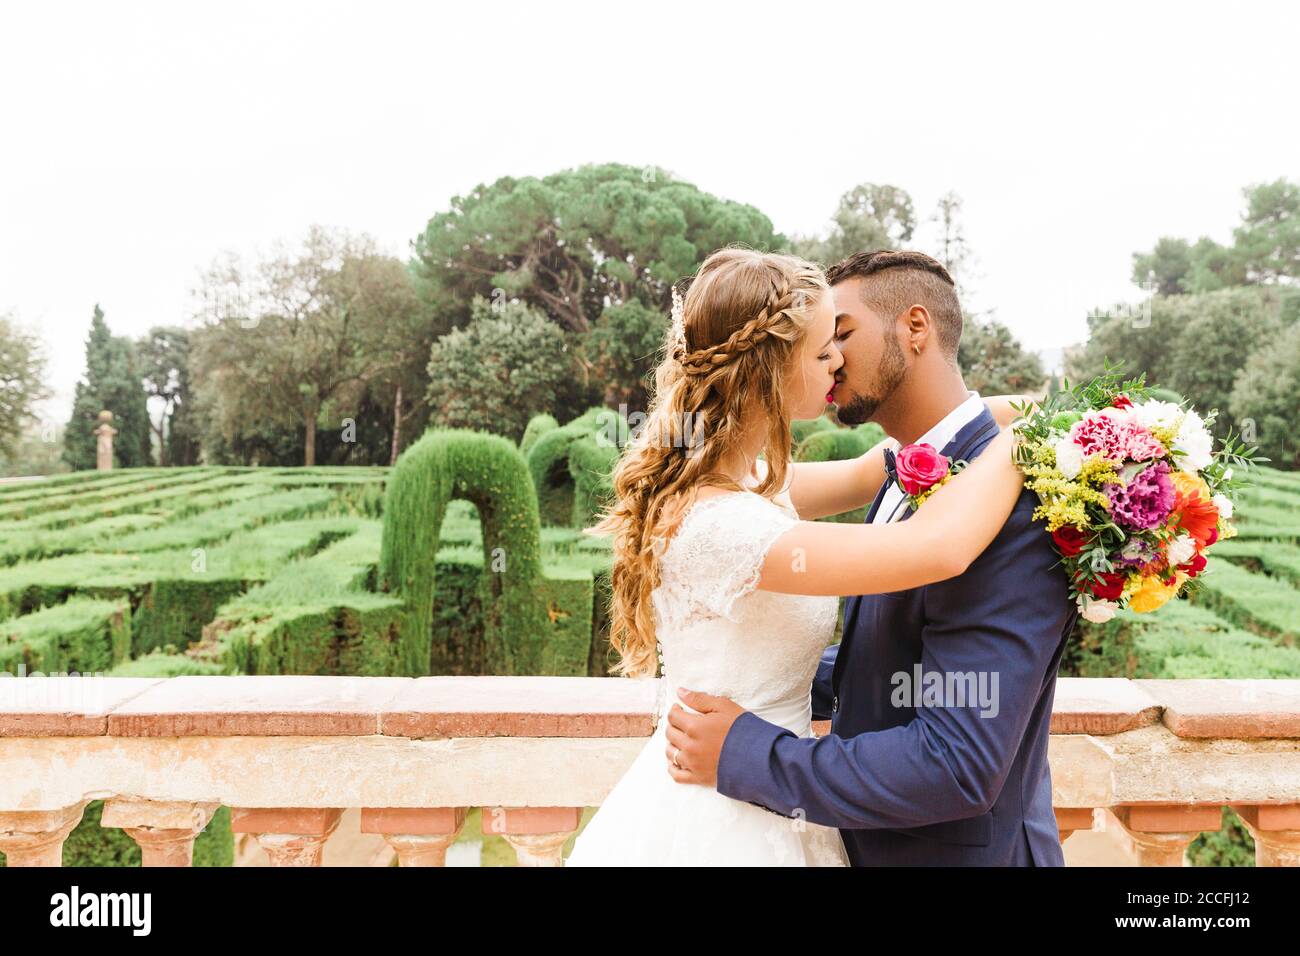 Matrimonio, sposi novelli, giovani adulti, diversità, amore, giardino, baciare, vista Foto Stock